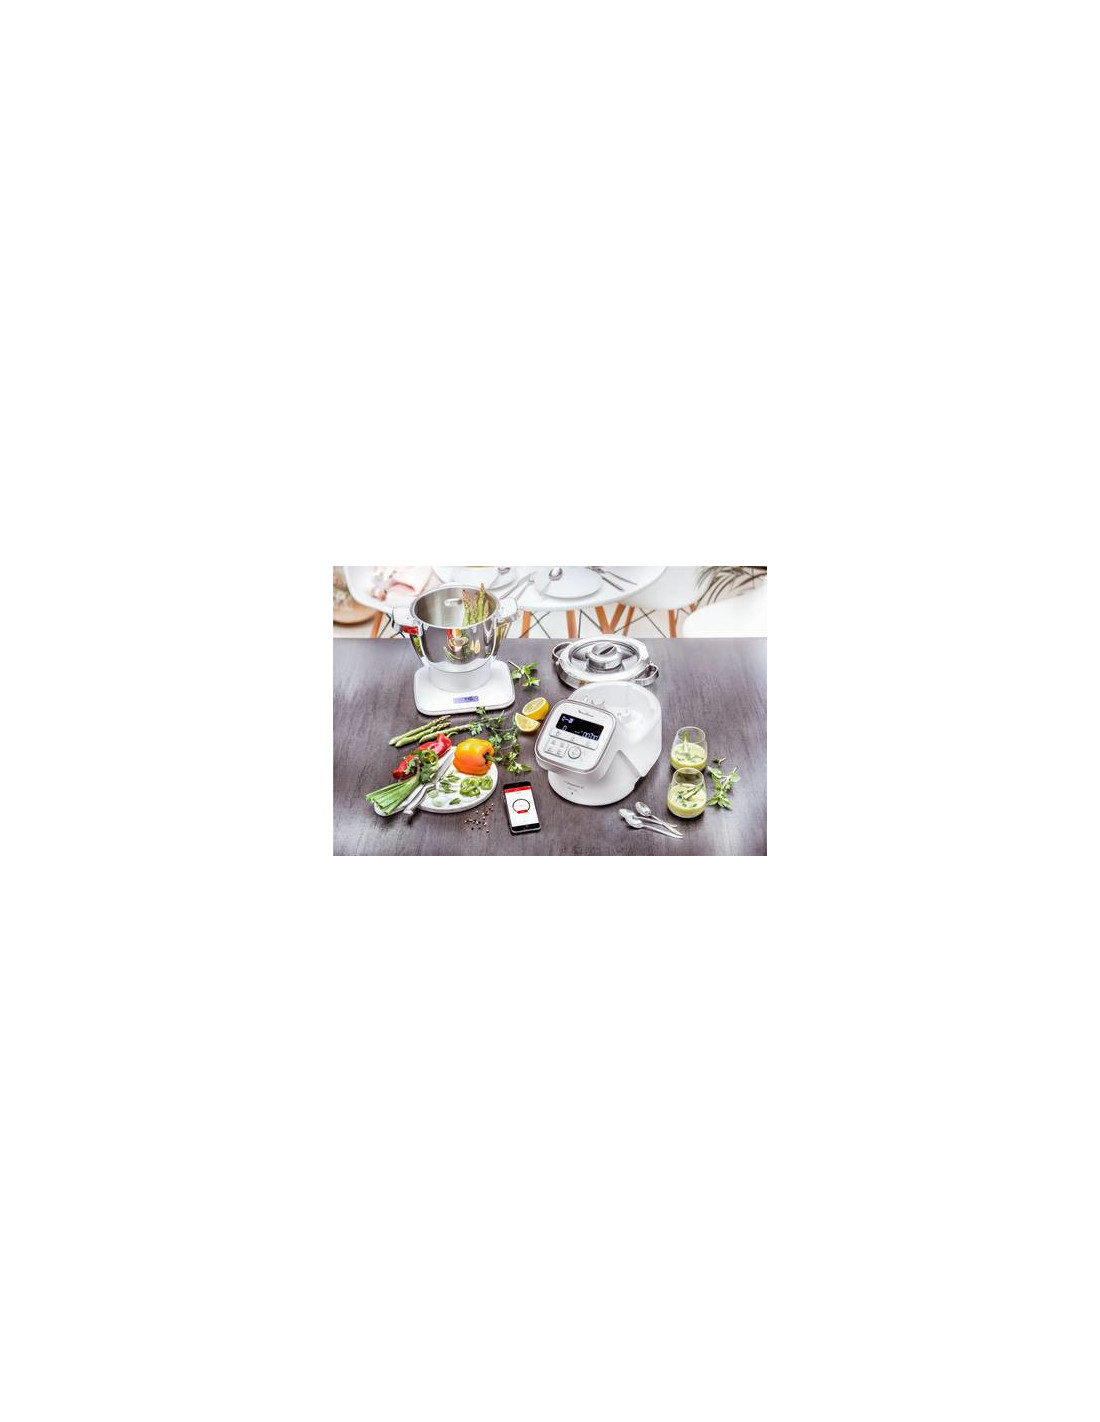 Moulinex YY4525FG robot de cuisine 1550 W 3 L Gris, Blanc